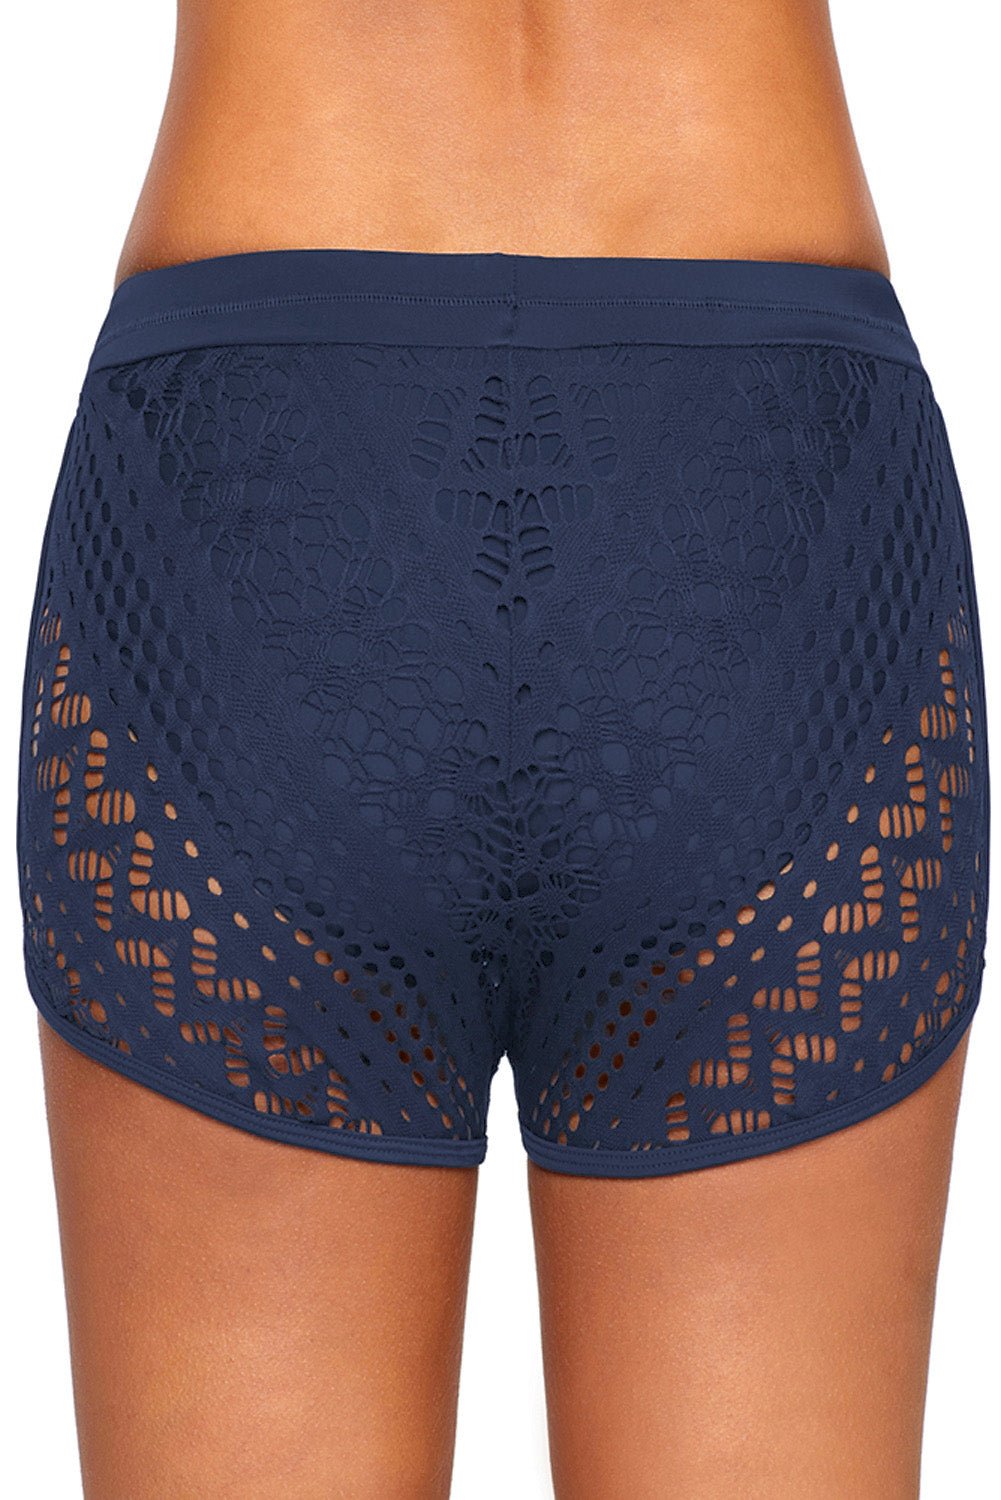 Lace Overlay Drawstring Swim Short, Plus Size Swimwear Shorts  Sunset and Swim   